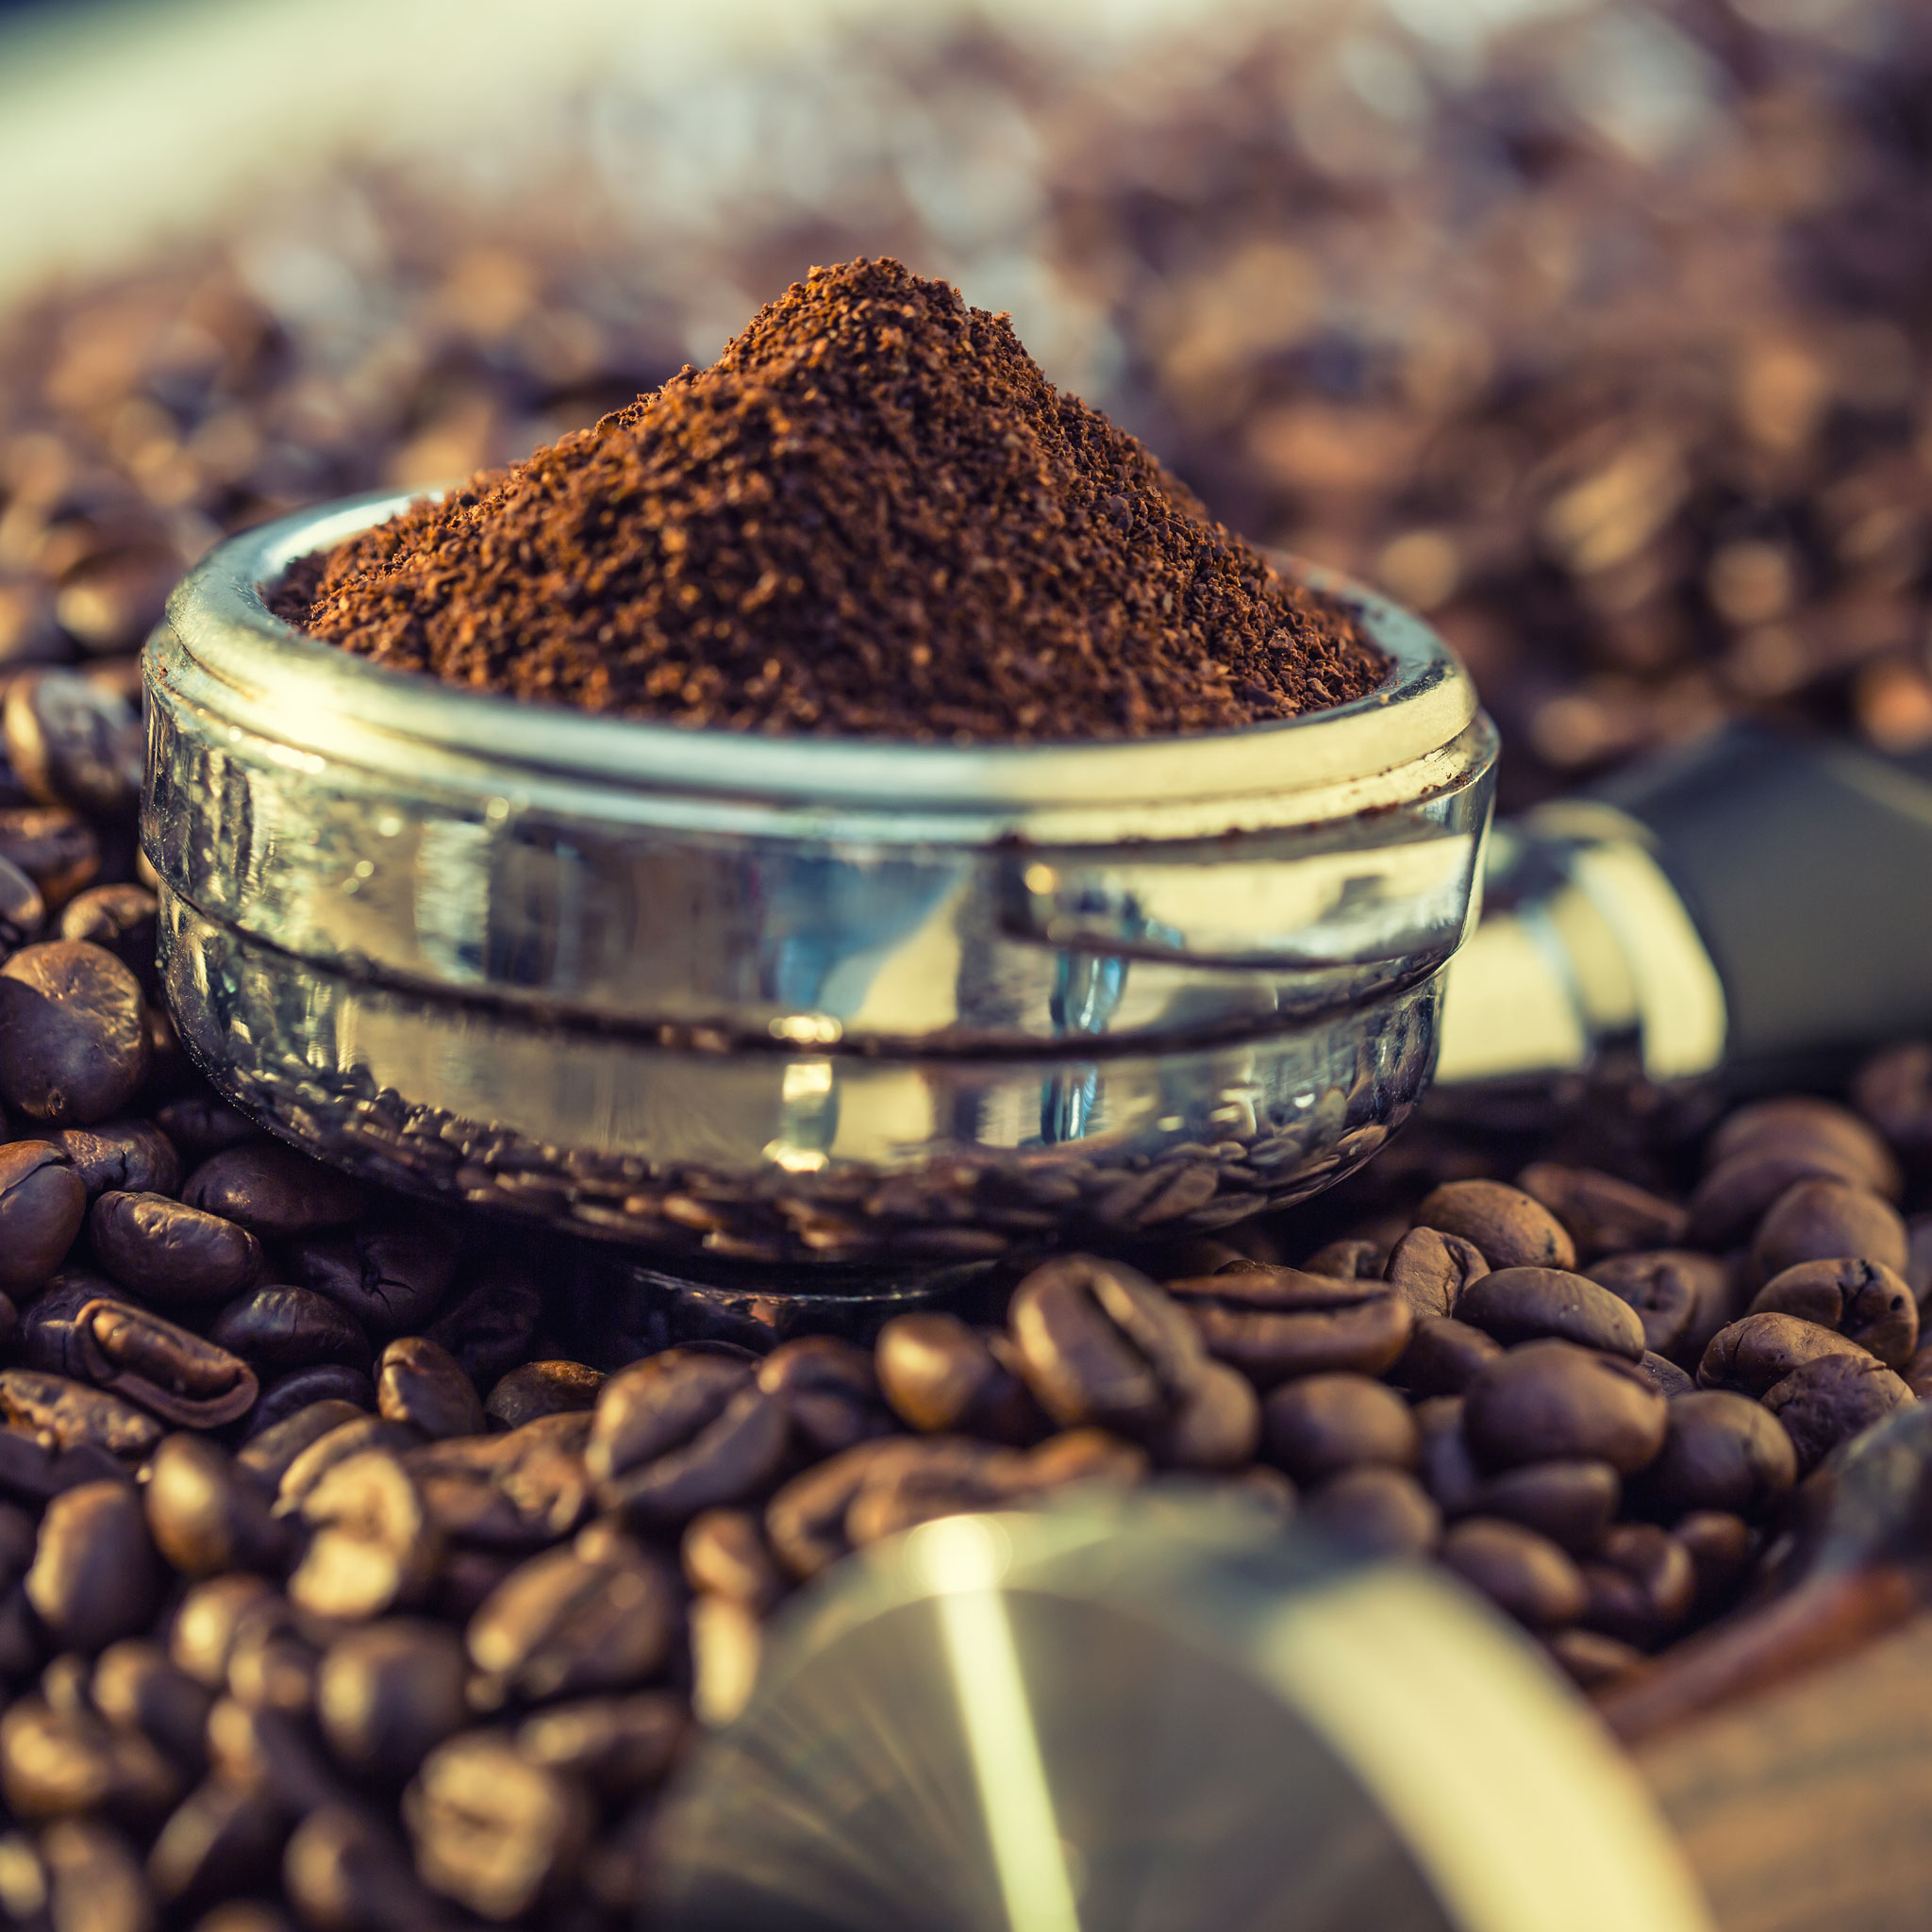 Coffee, ground,cafe,espresso